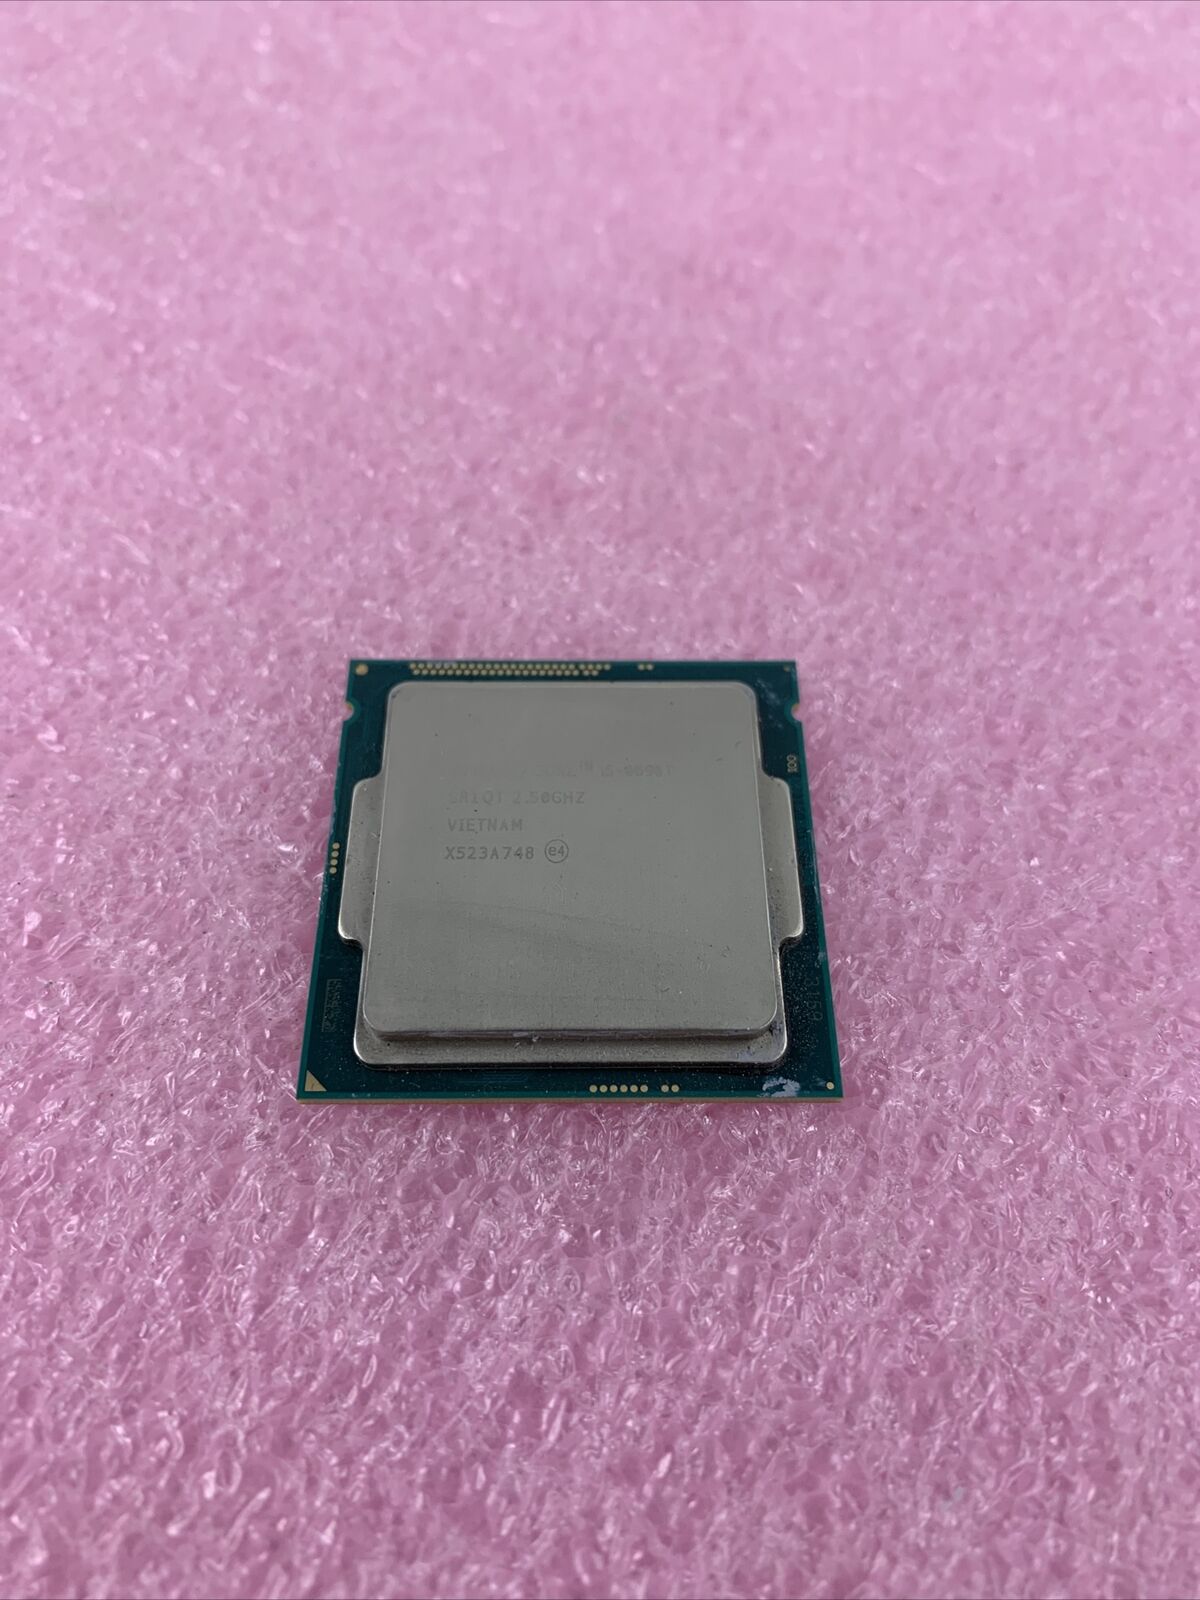 Intel Core i5-4690T 2.5GHz SR1QT Processor